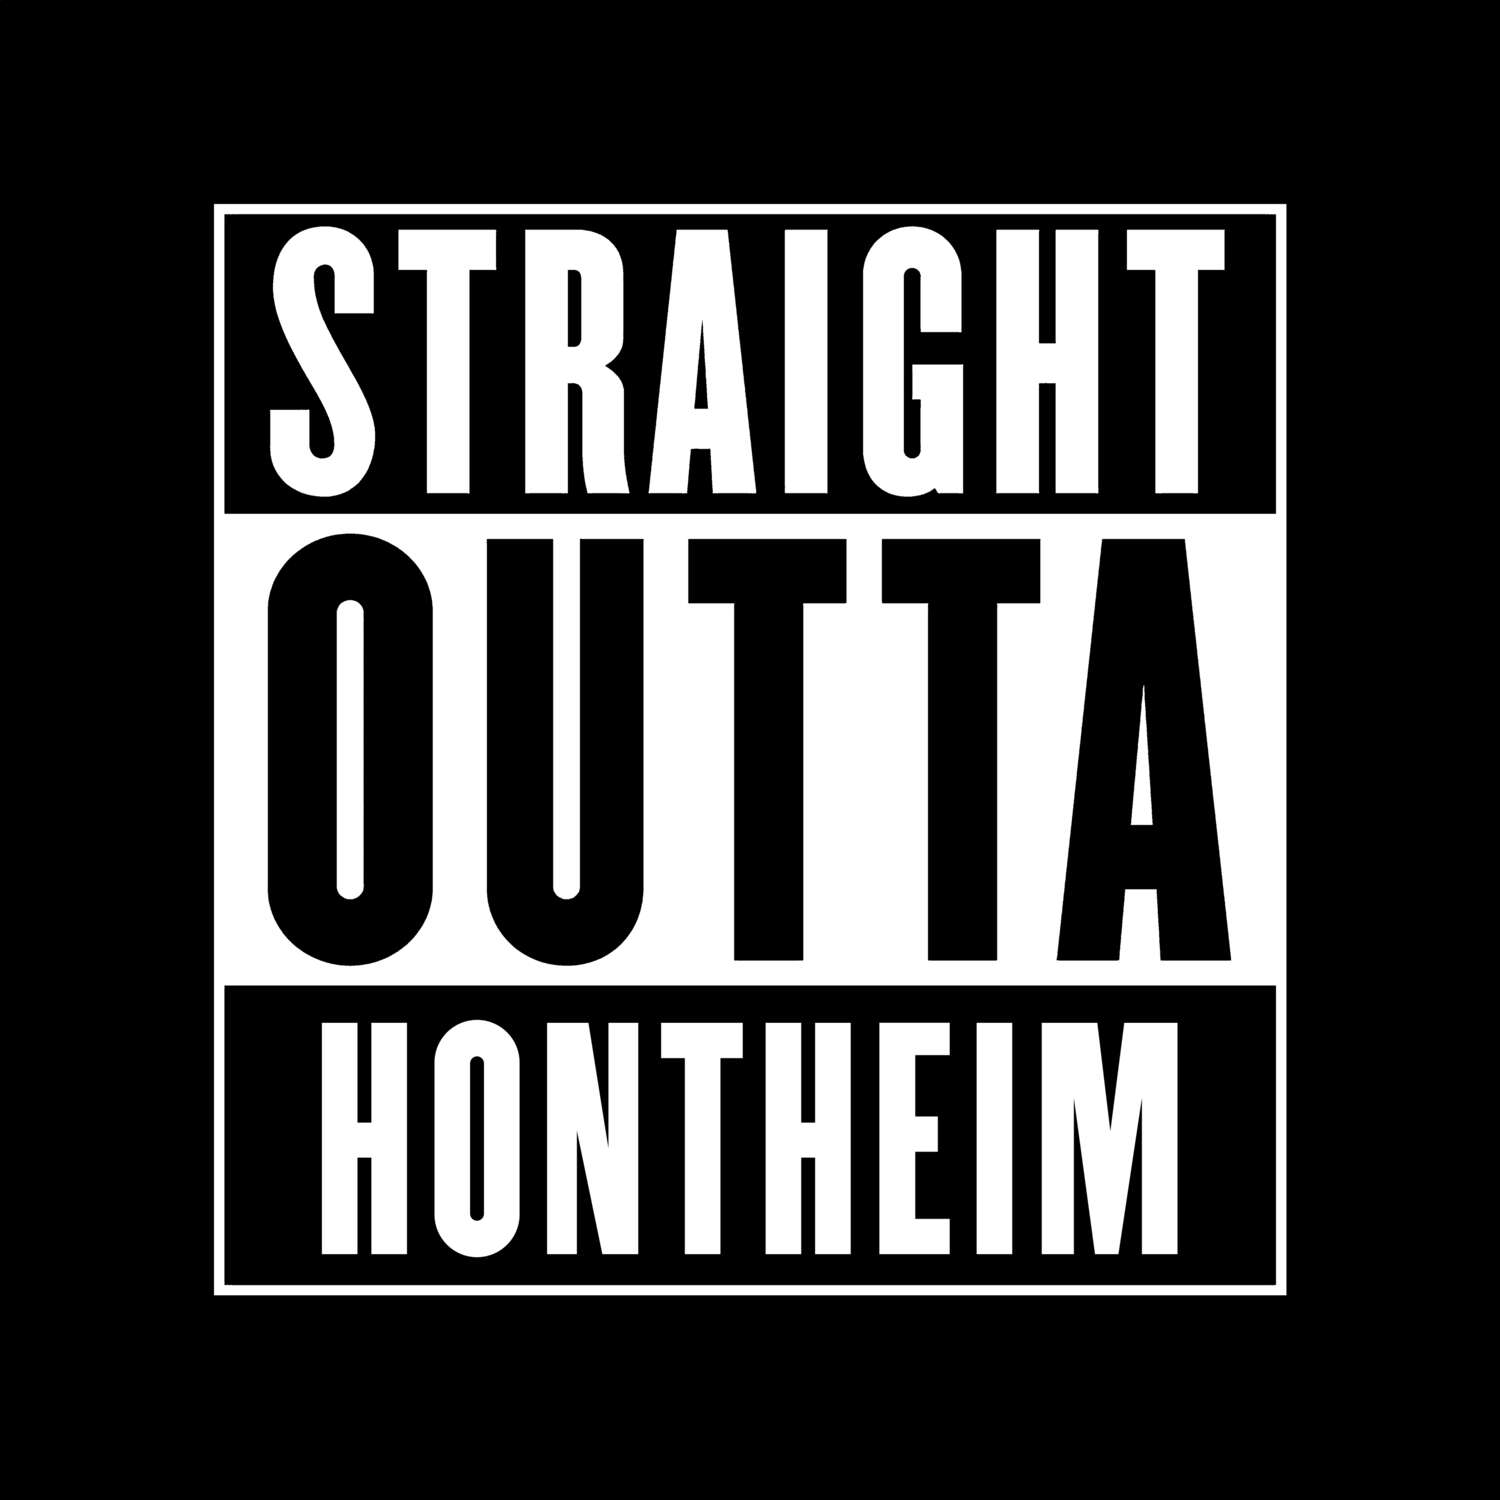 Hontheim T-Shirt »Straight Outta«